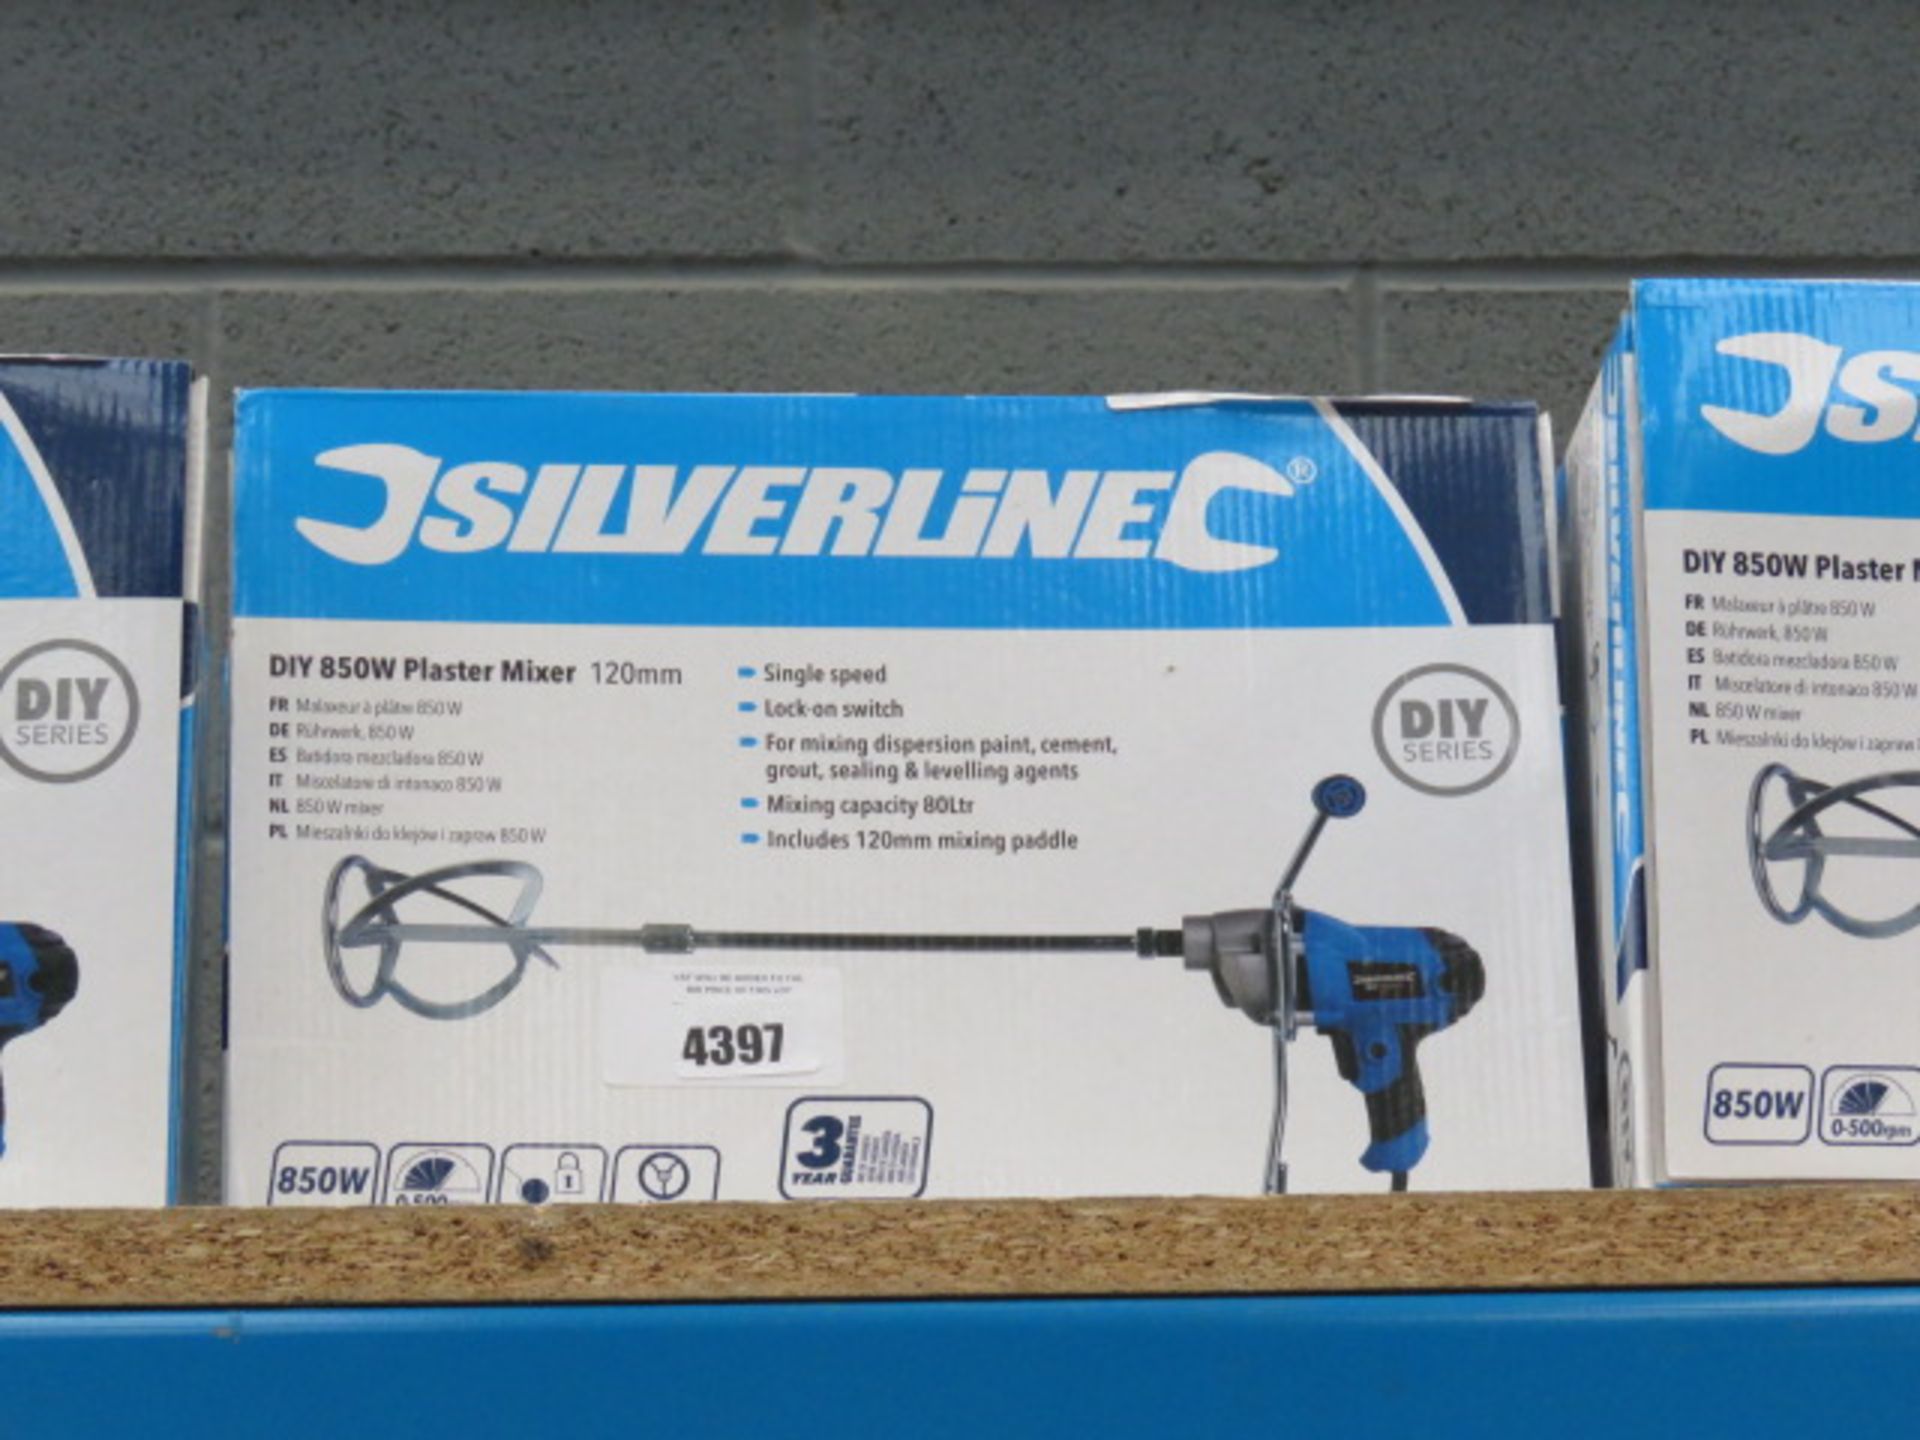 4339 Silverline 850W plaster mixer